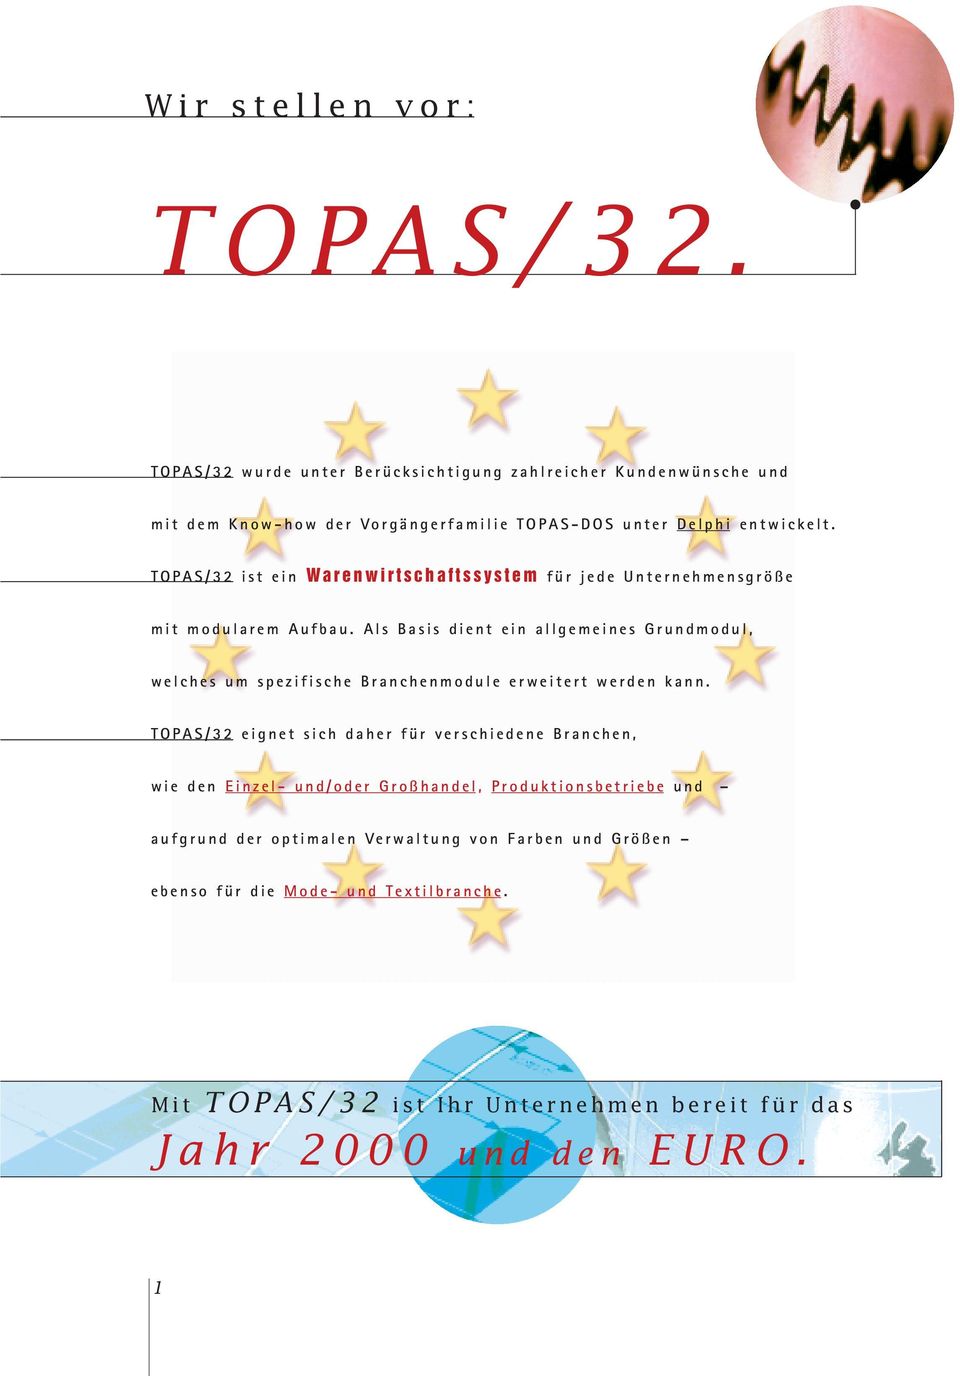 TOPAS/32 ist ein Warenwirtschaftssystem für jede Unternehmensgröße mit modularem Aufbau.